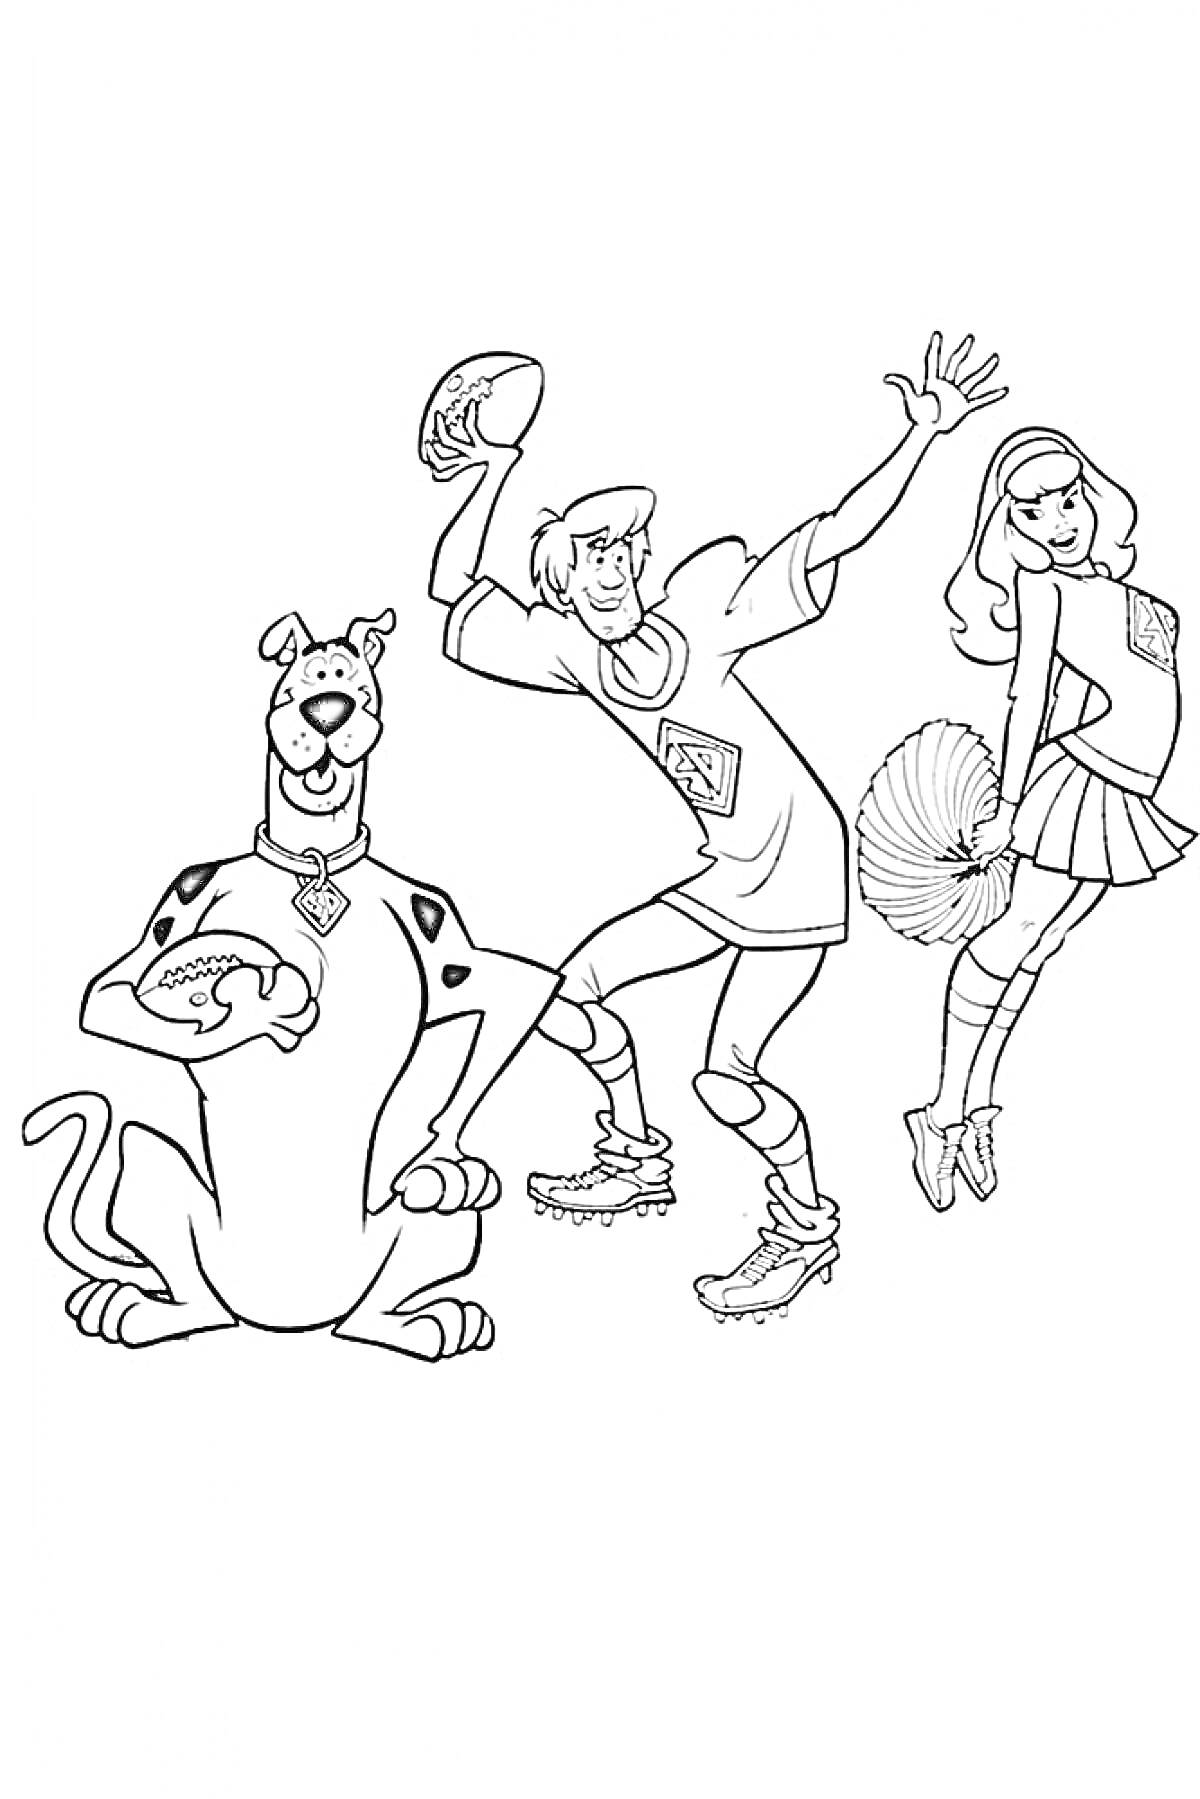 Скуби Ду с футбольным мячом, персонаж в спортивной одежде с мячом для американского футбола, девочка в костюме черлидерши с помпонами